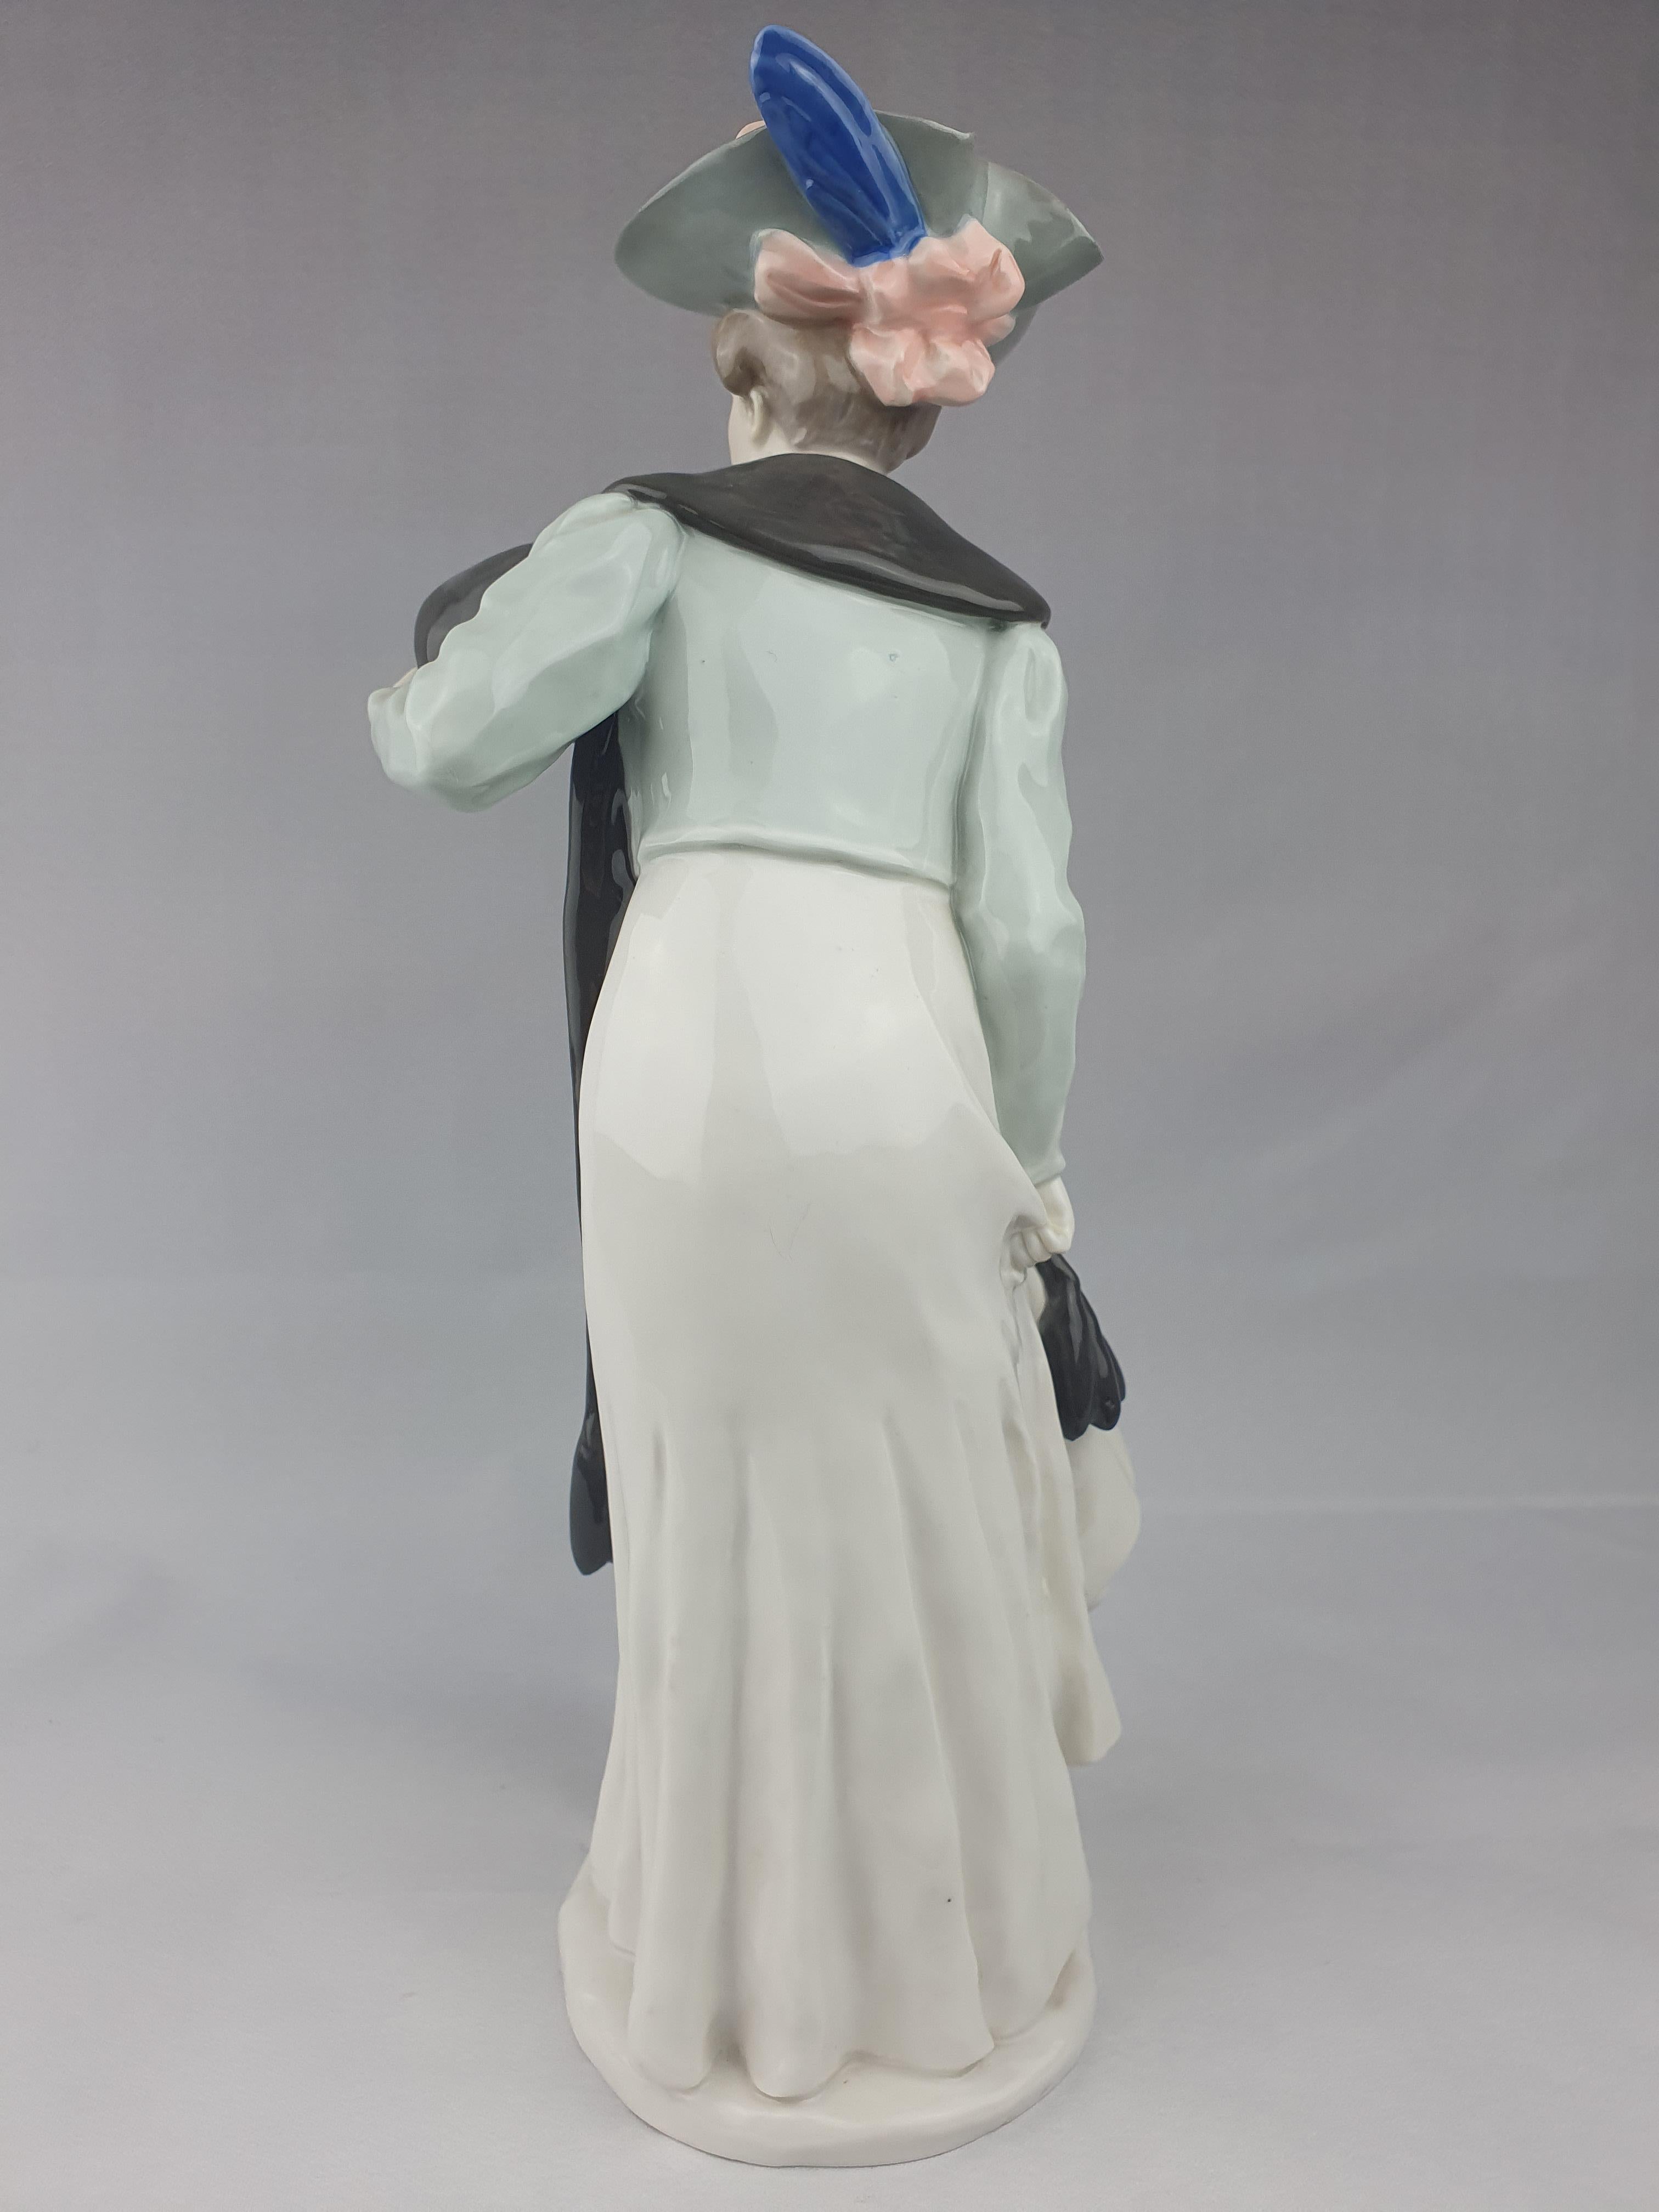 Meissener Figur einer modischen Dame, die eine Pelzstola trägt und einen Muff hält. Erstmals modelliert von Konrad Hentschel im Jahr 1906 unter Verwendung der neuen, gegen Ende des 19. Jahrhunderts in Meißen entwickelten Hochglanzlacke. Diese Farben